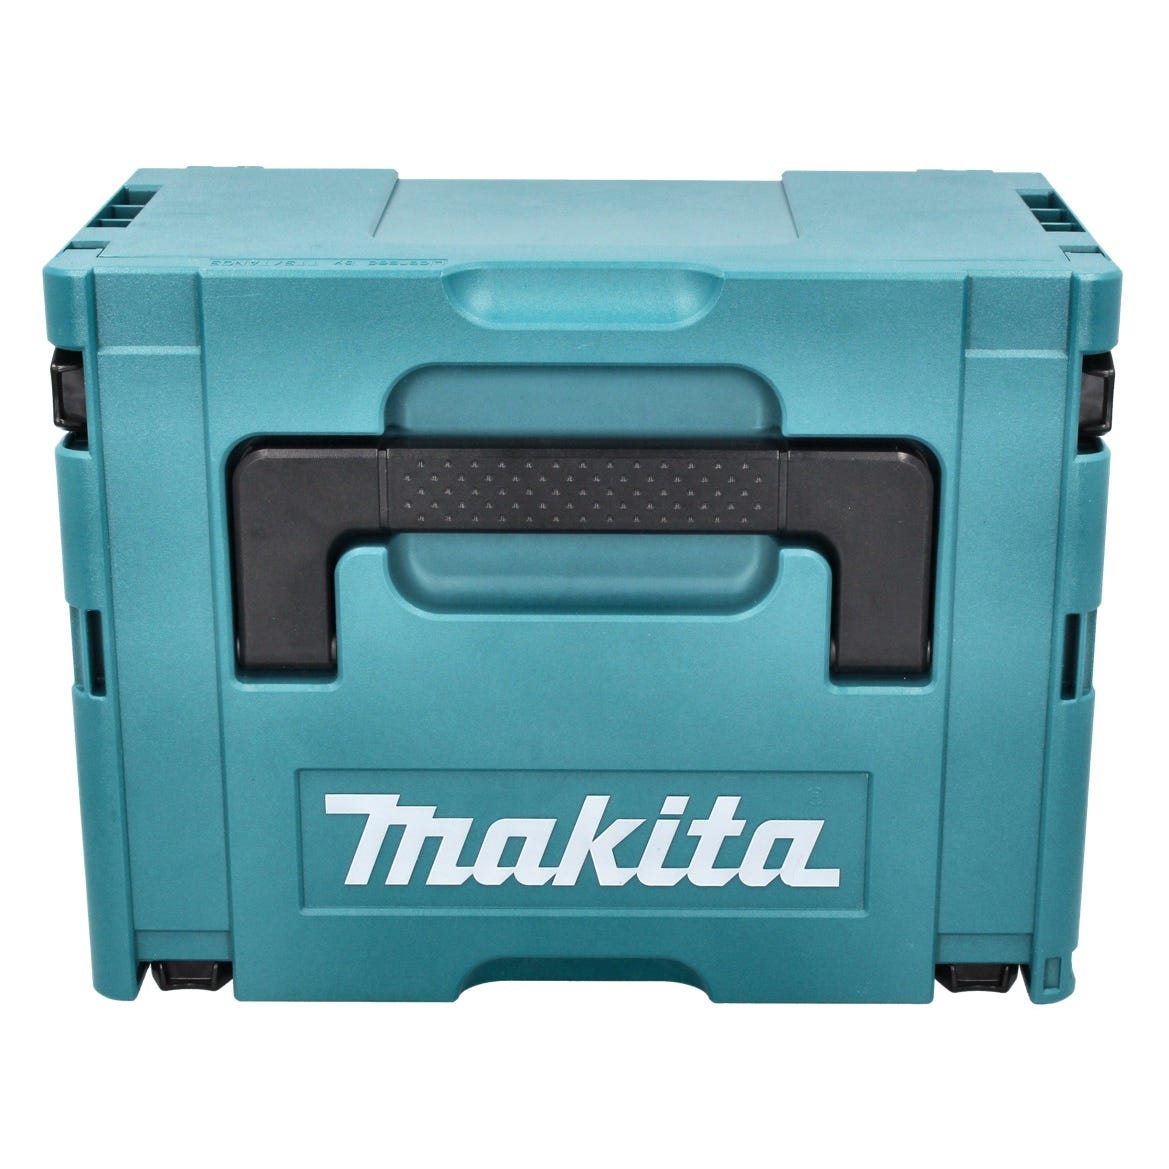 Makita DSS 610 RM1J scie circulaire sans fil 18 V 165 mm + 1x batterie 4,0 Ah + chargeur + makpac 2